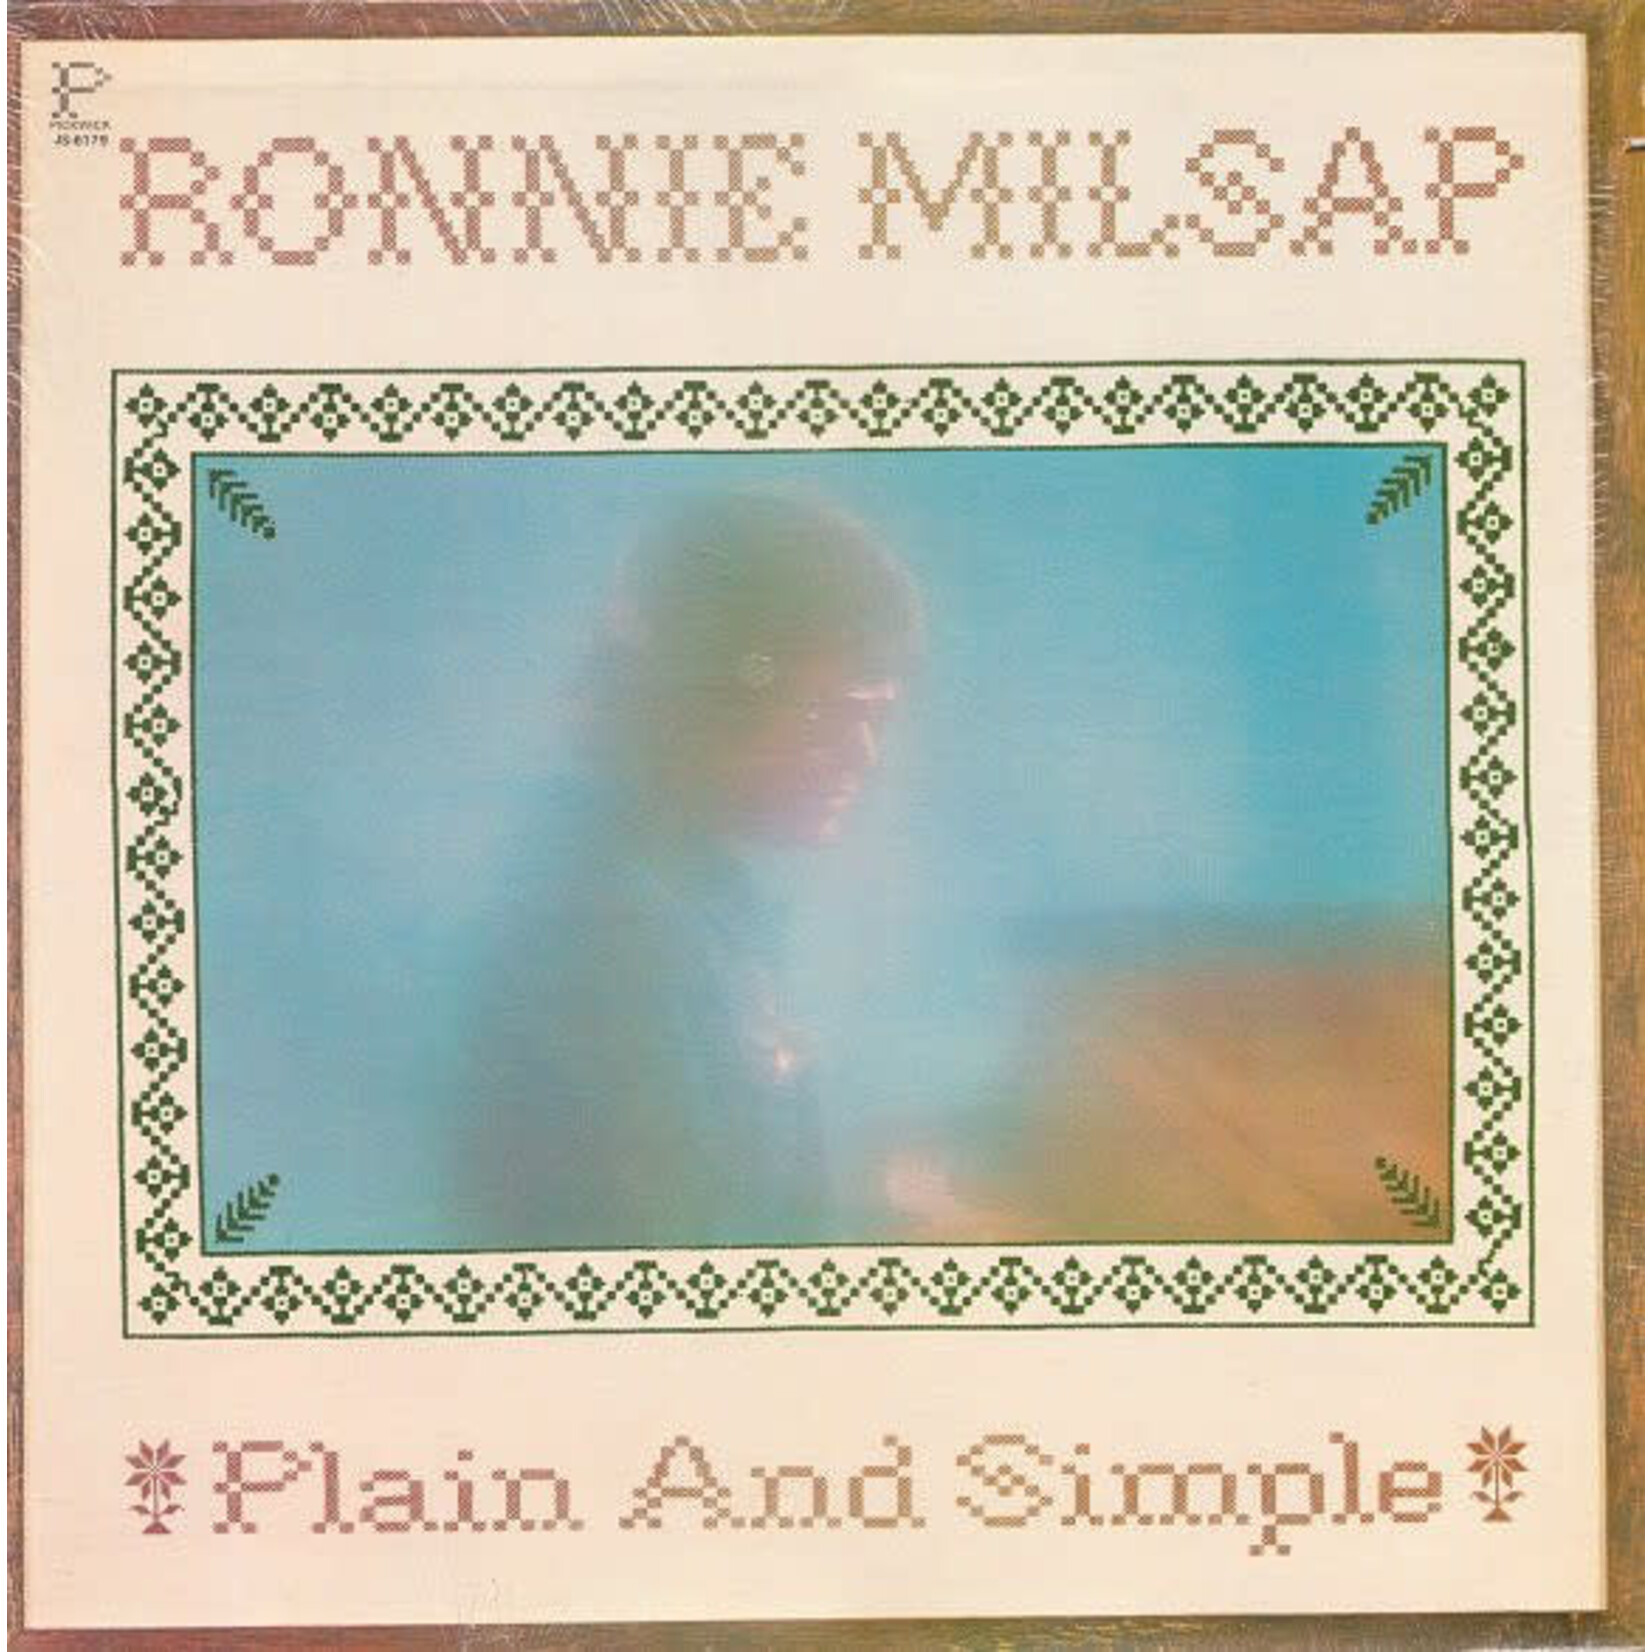 Ronnie Milsap Ronnie Milsap – Plain And Simple (VG, 1975, LP, Pickwick – JS 6179)